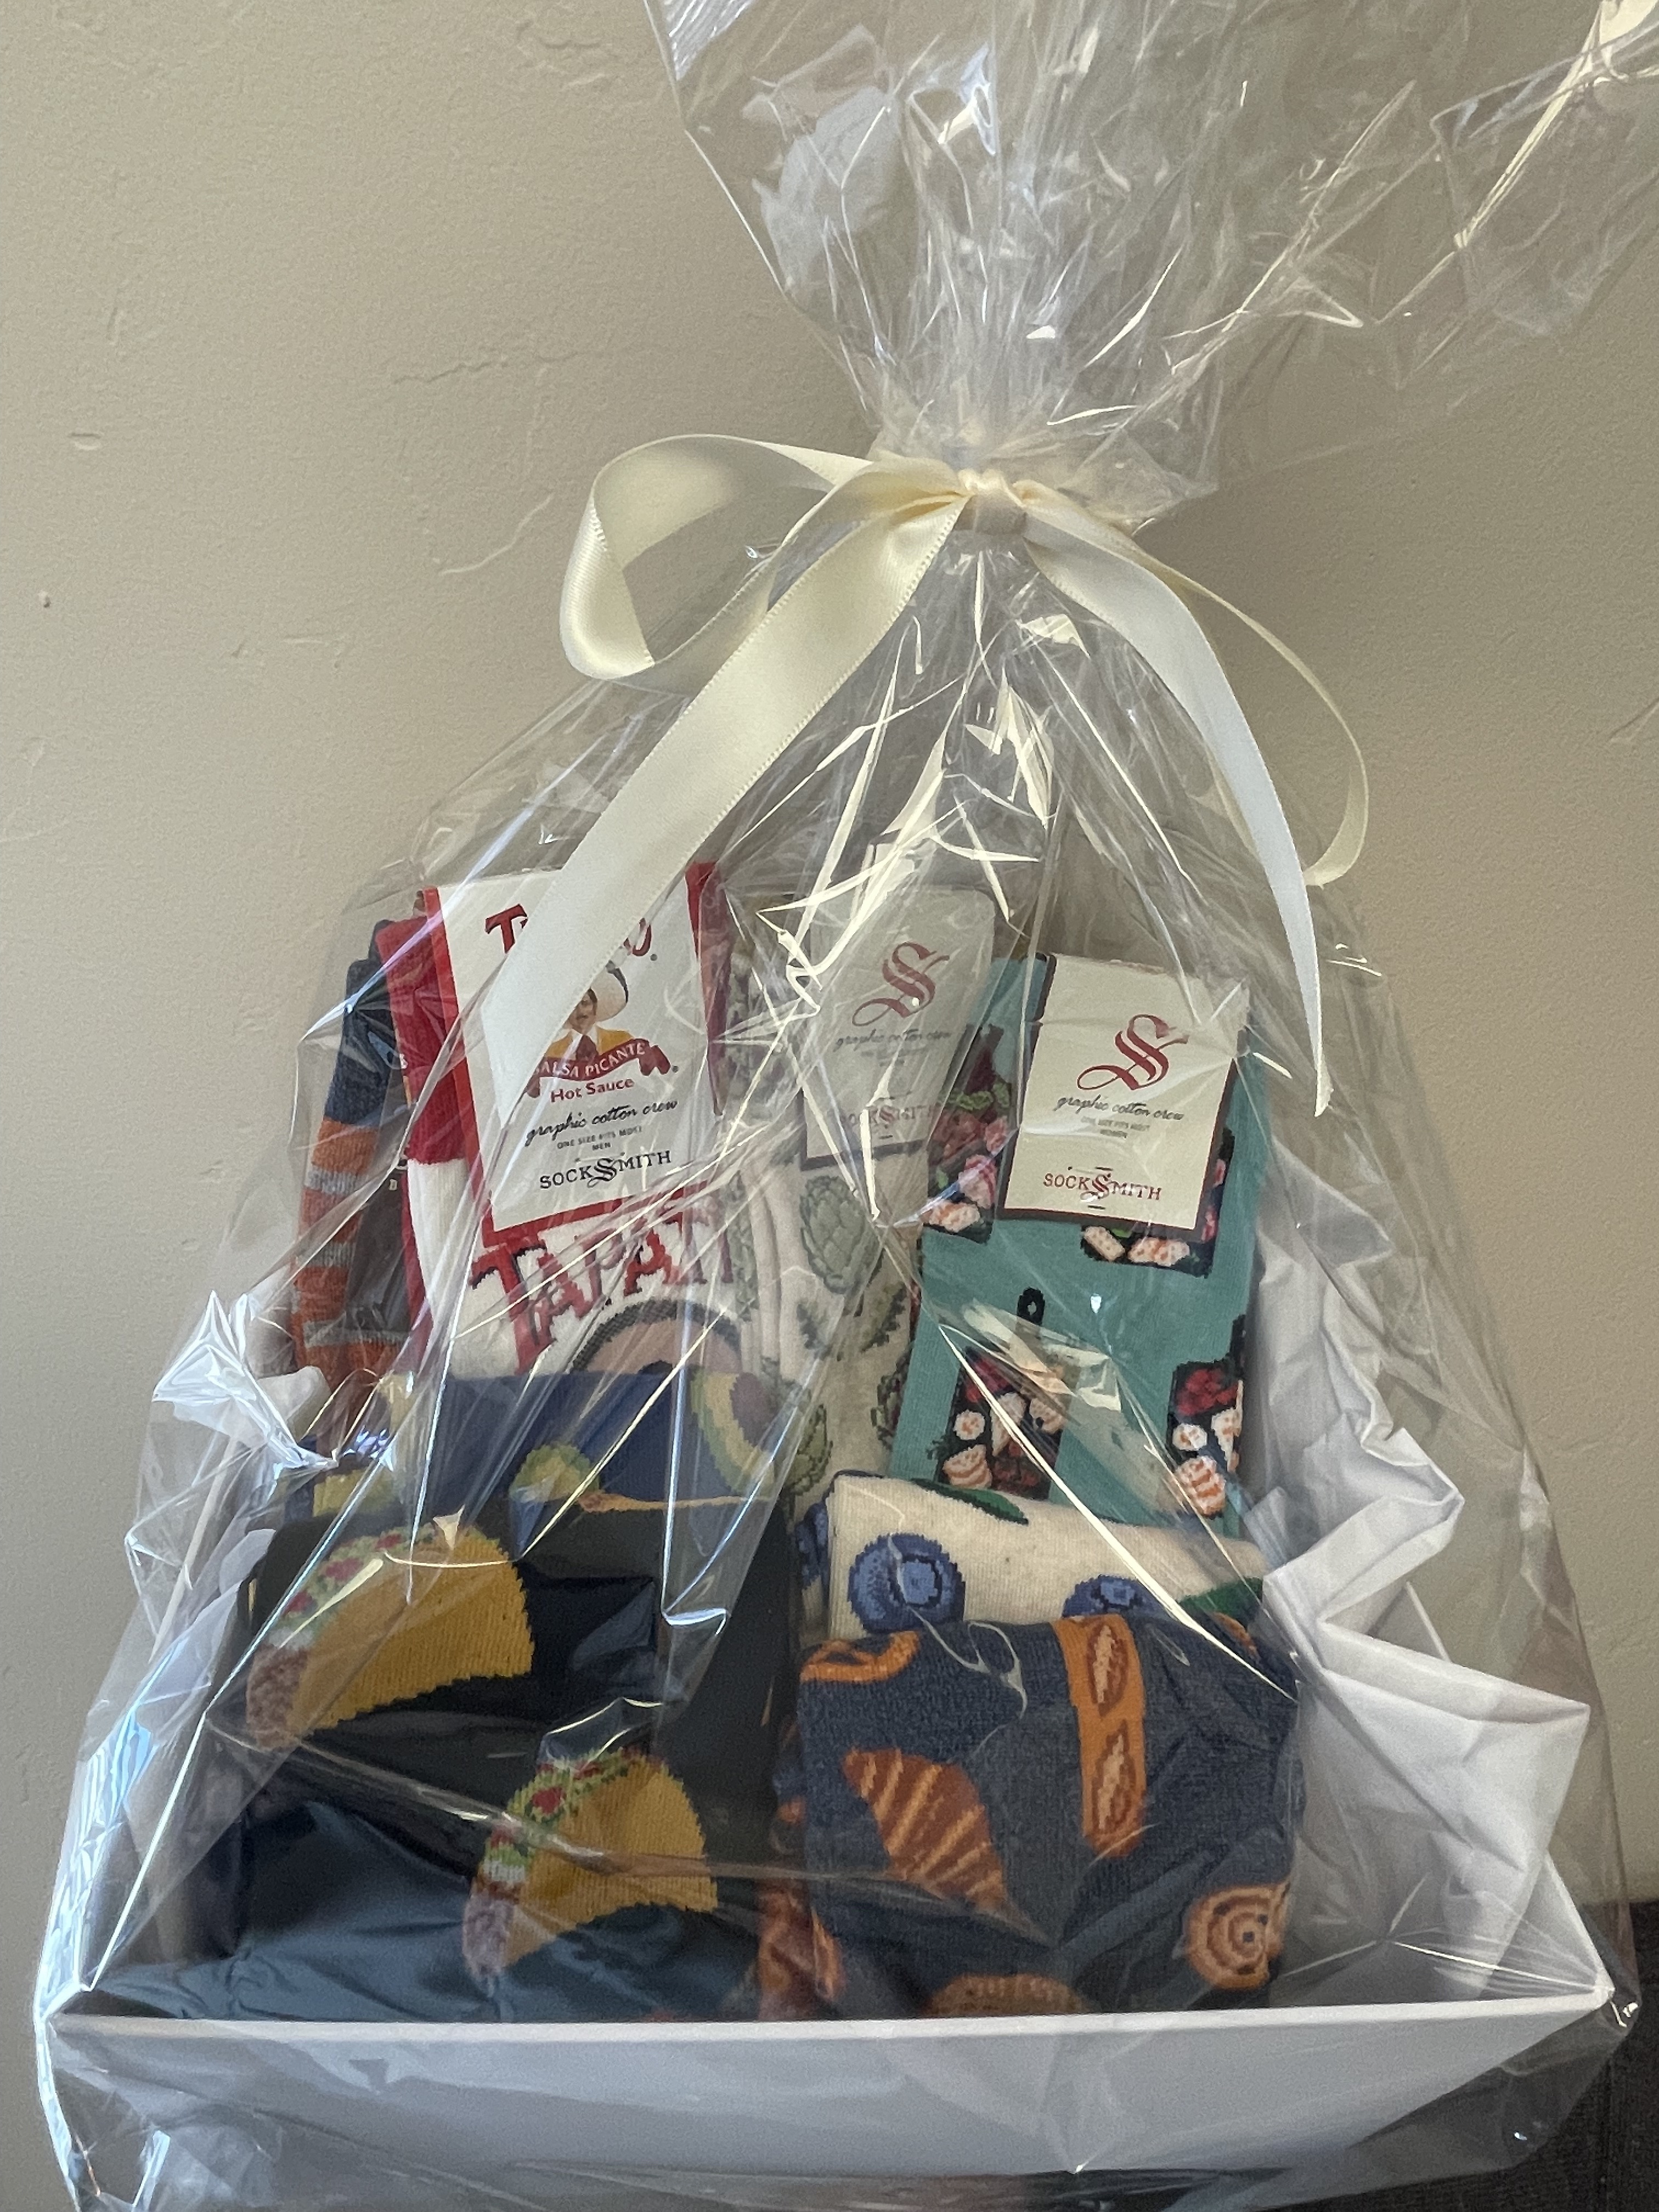 Raffle item- SockShop gift basket! 